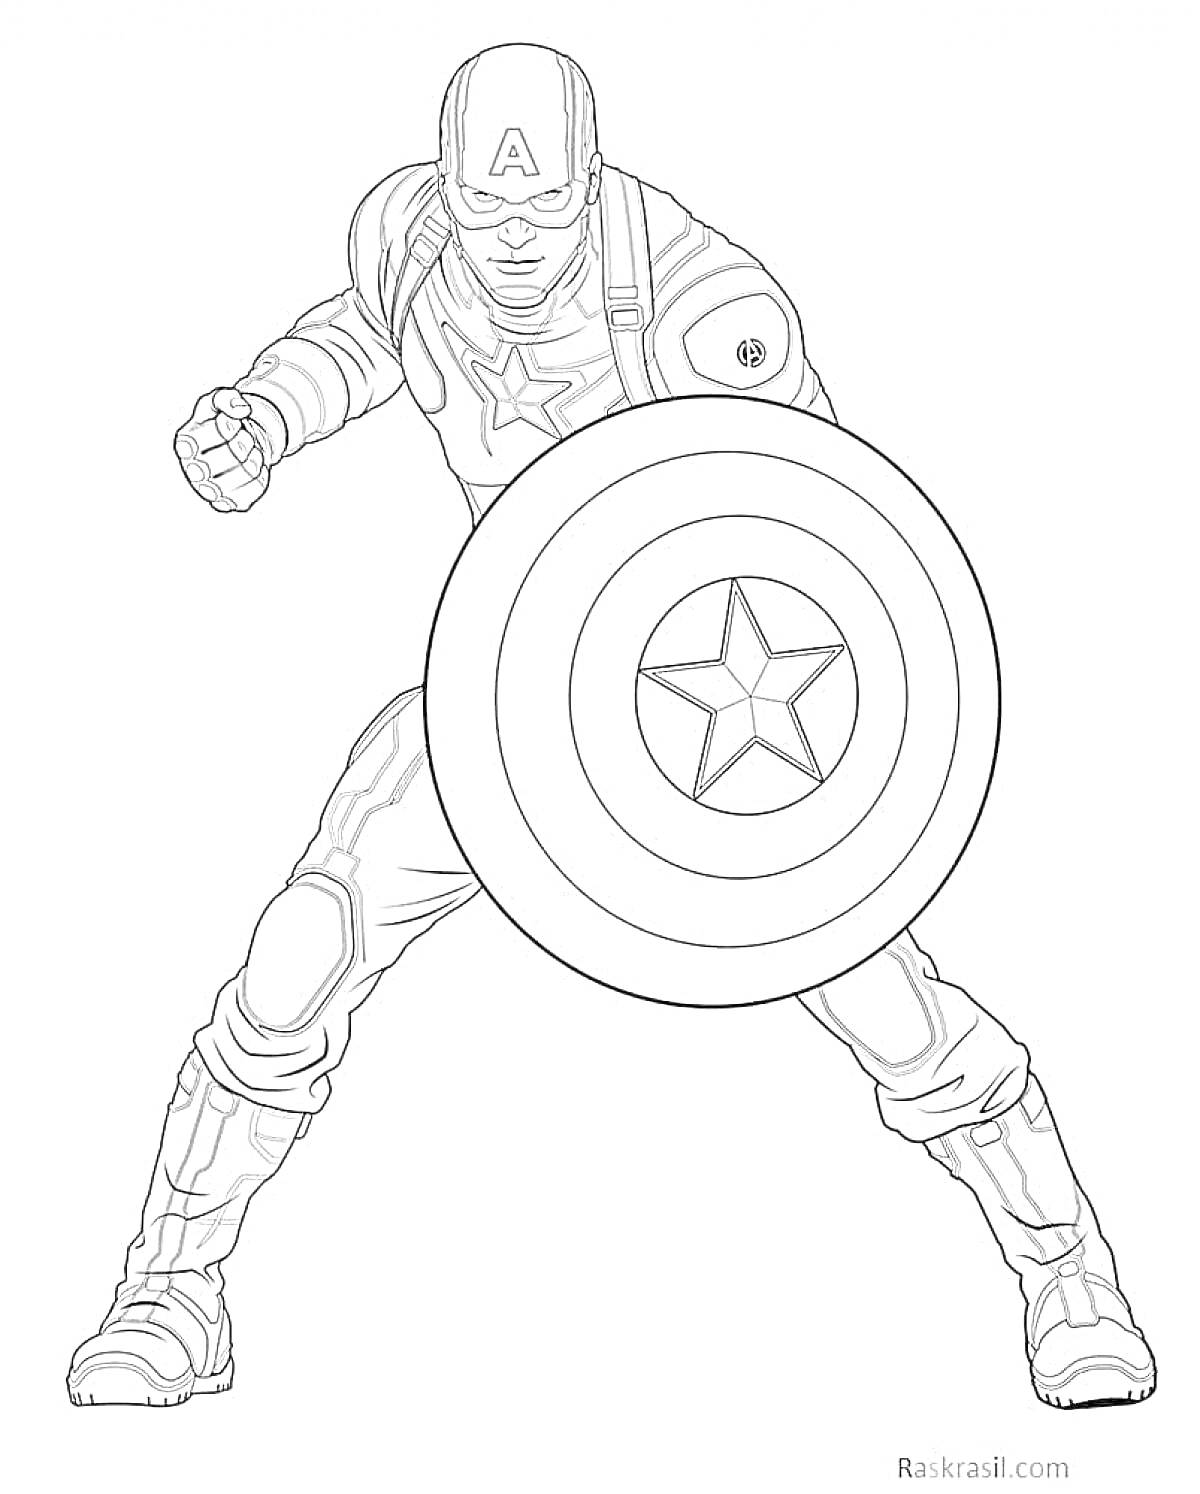 Раскраска Капитан Америка с поднятым кулаком и щитом в боевой стойке